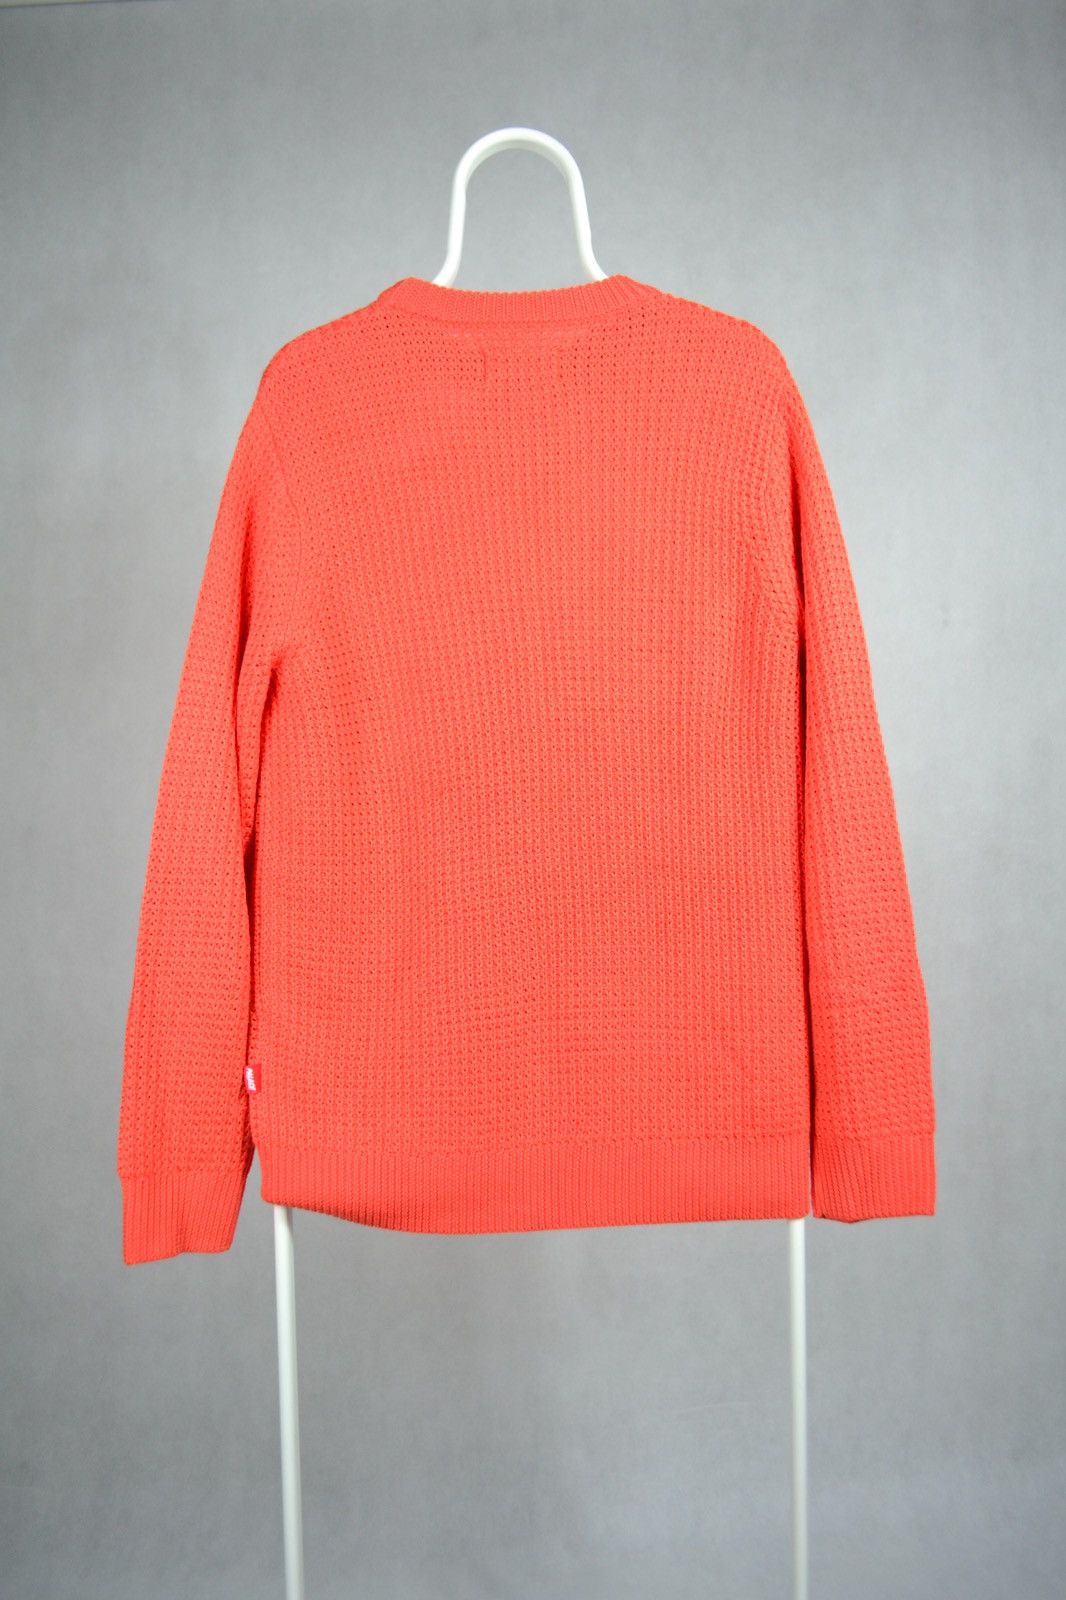 Palace Palace sweater C-Hunky Knit size L Size US L / EU 52-54 / 3 - 2 Preview